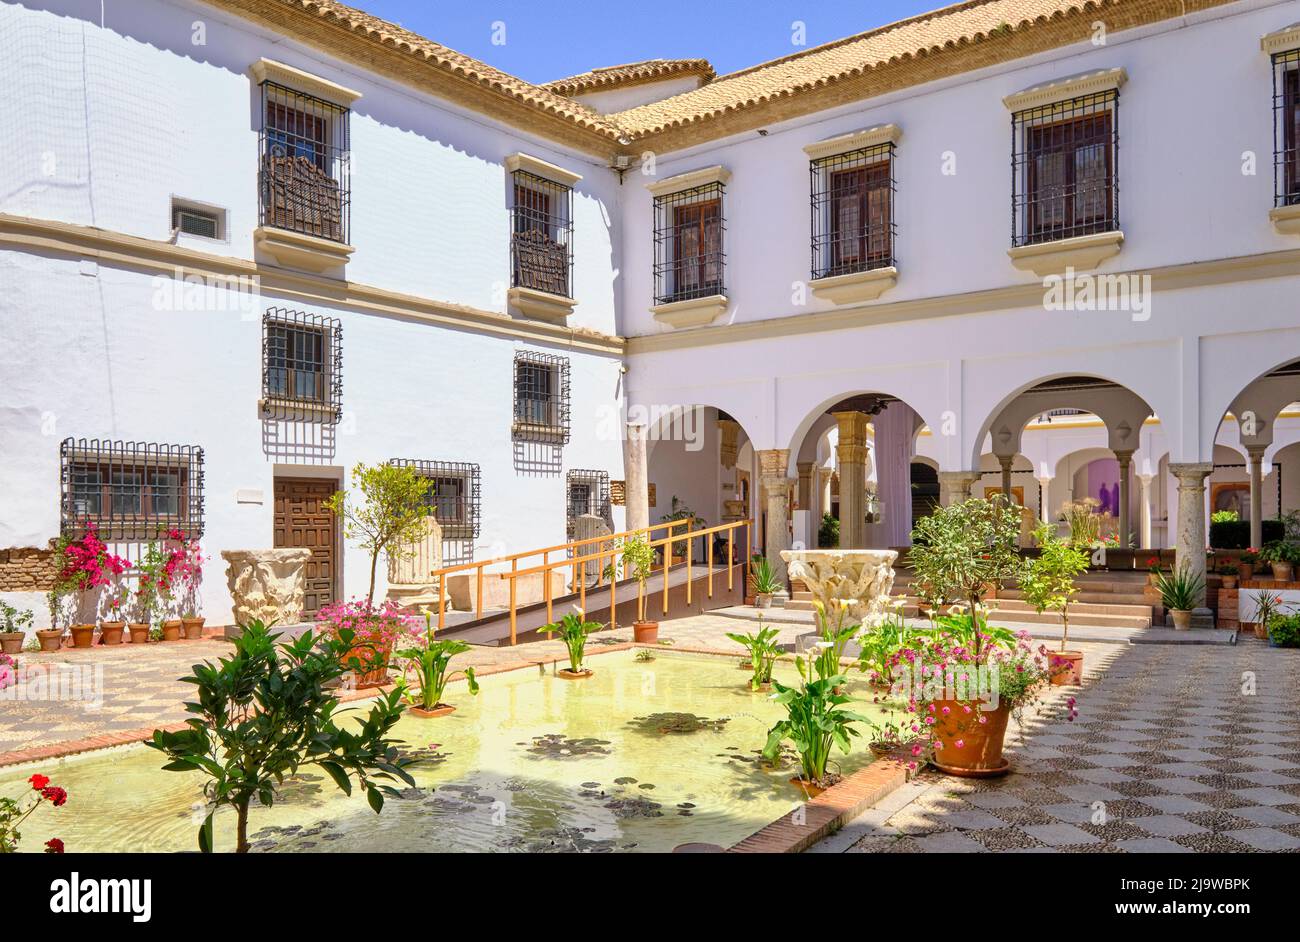 Patio (courtyard) of the Museo Arqueologico de Cordoba. Andalucia, Spain Stock Photo